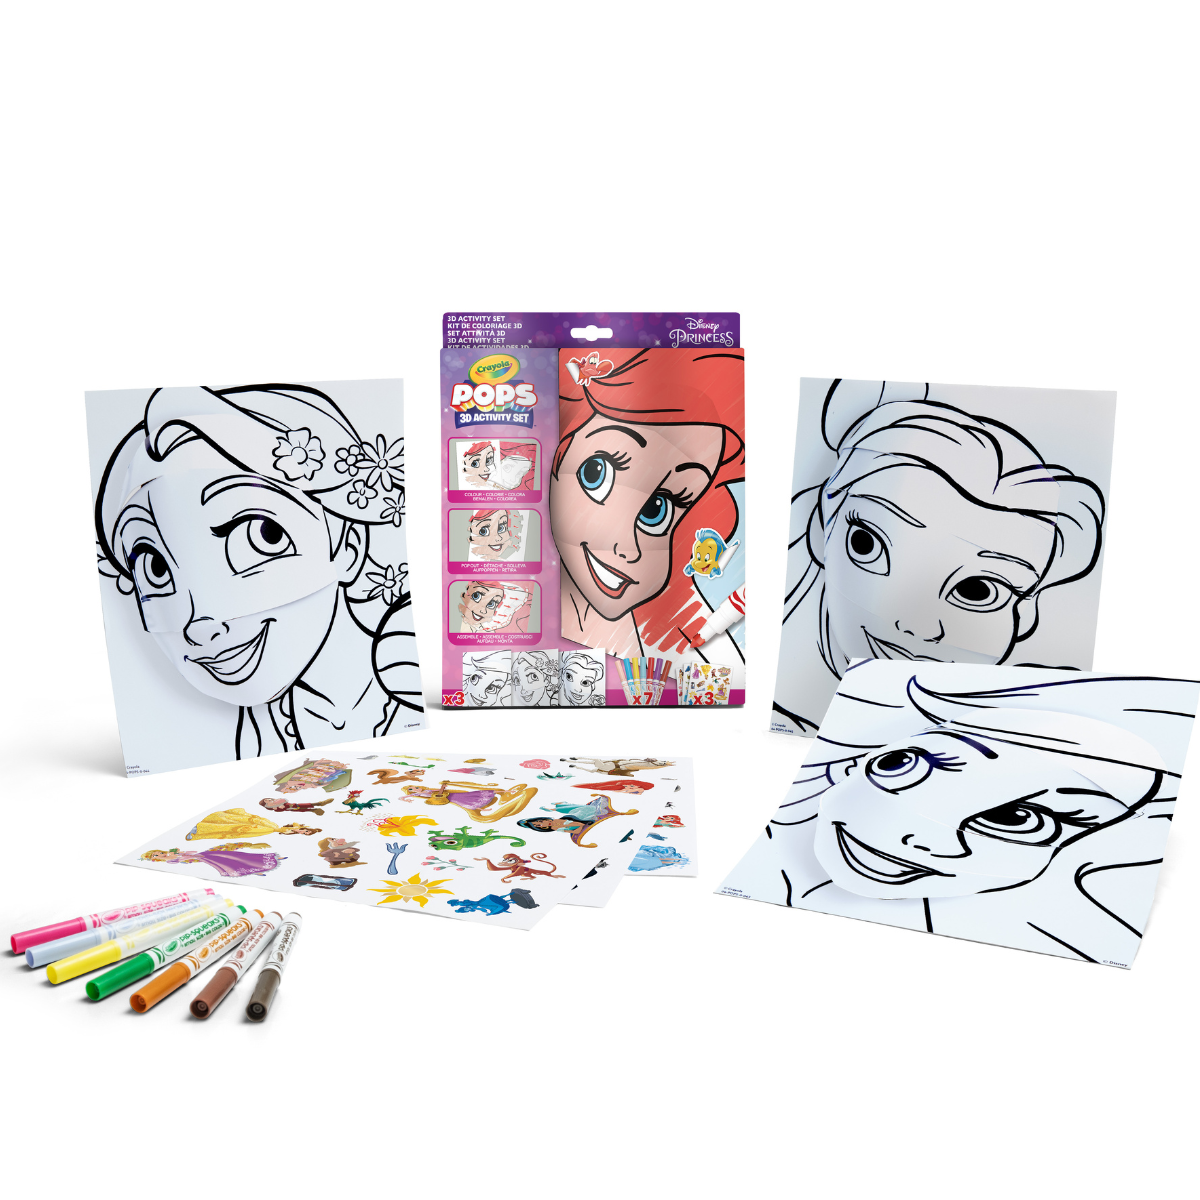 Crayola pops - set attività 3d, per colorare e creare disegni in 3d, attività creativa e regalo per bambini, soggetto disney princess, da 6 anni - CRAYOLA, DISNEY PRINCESS